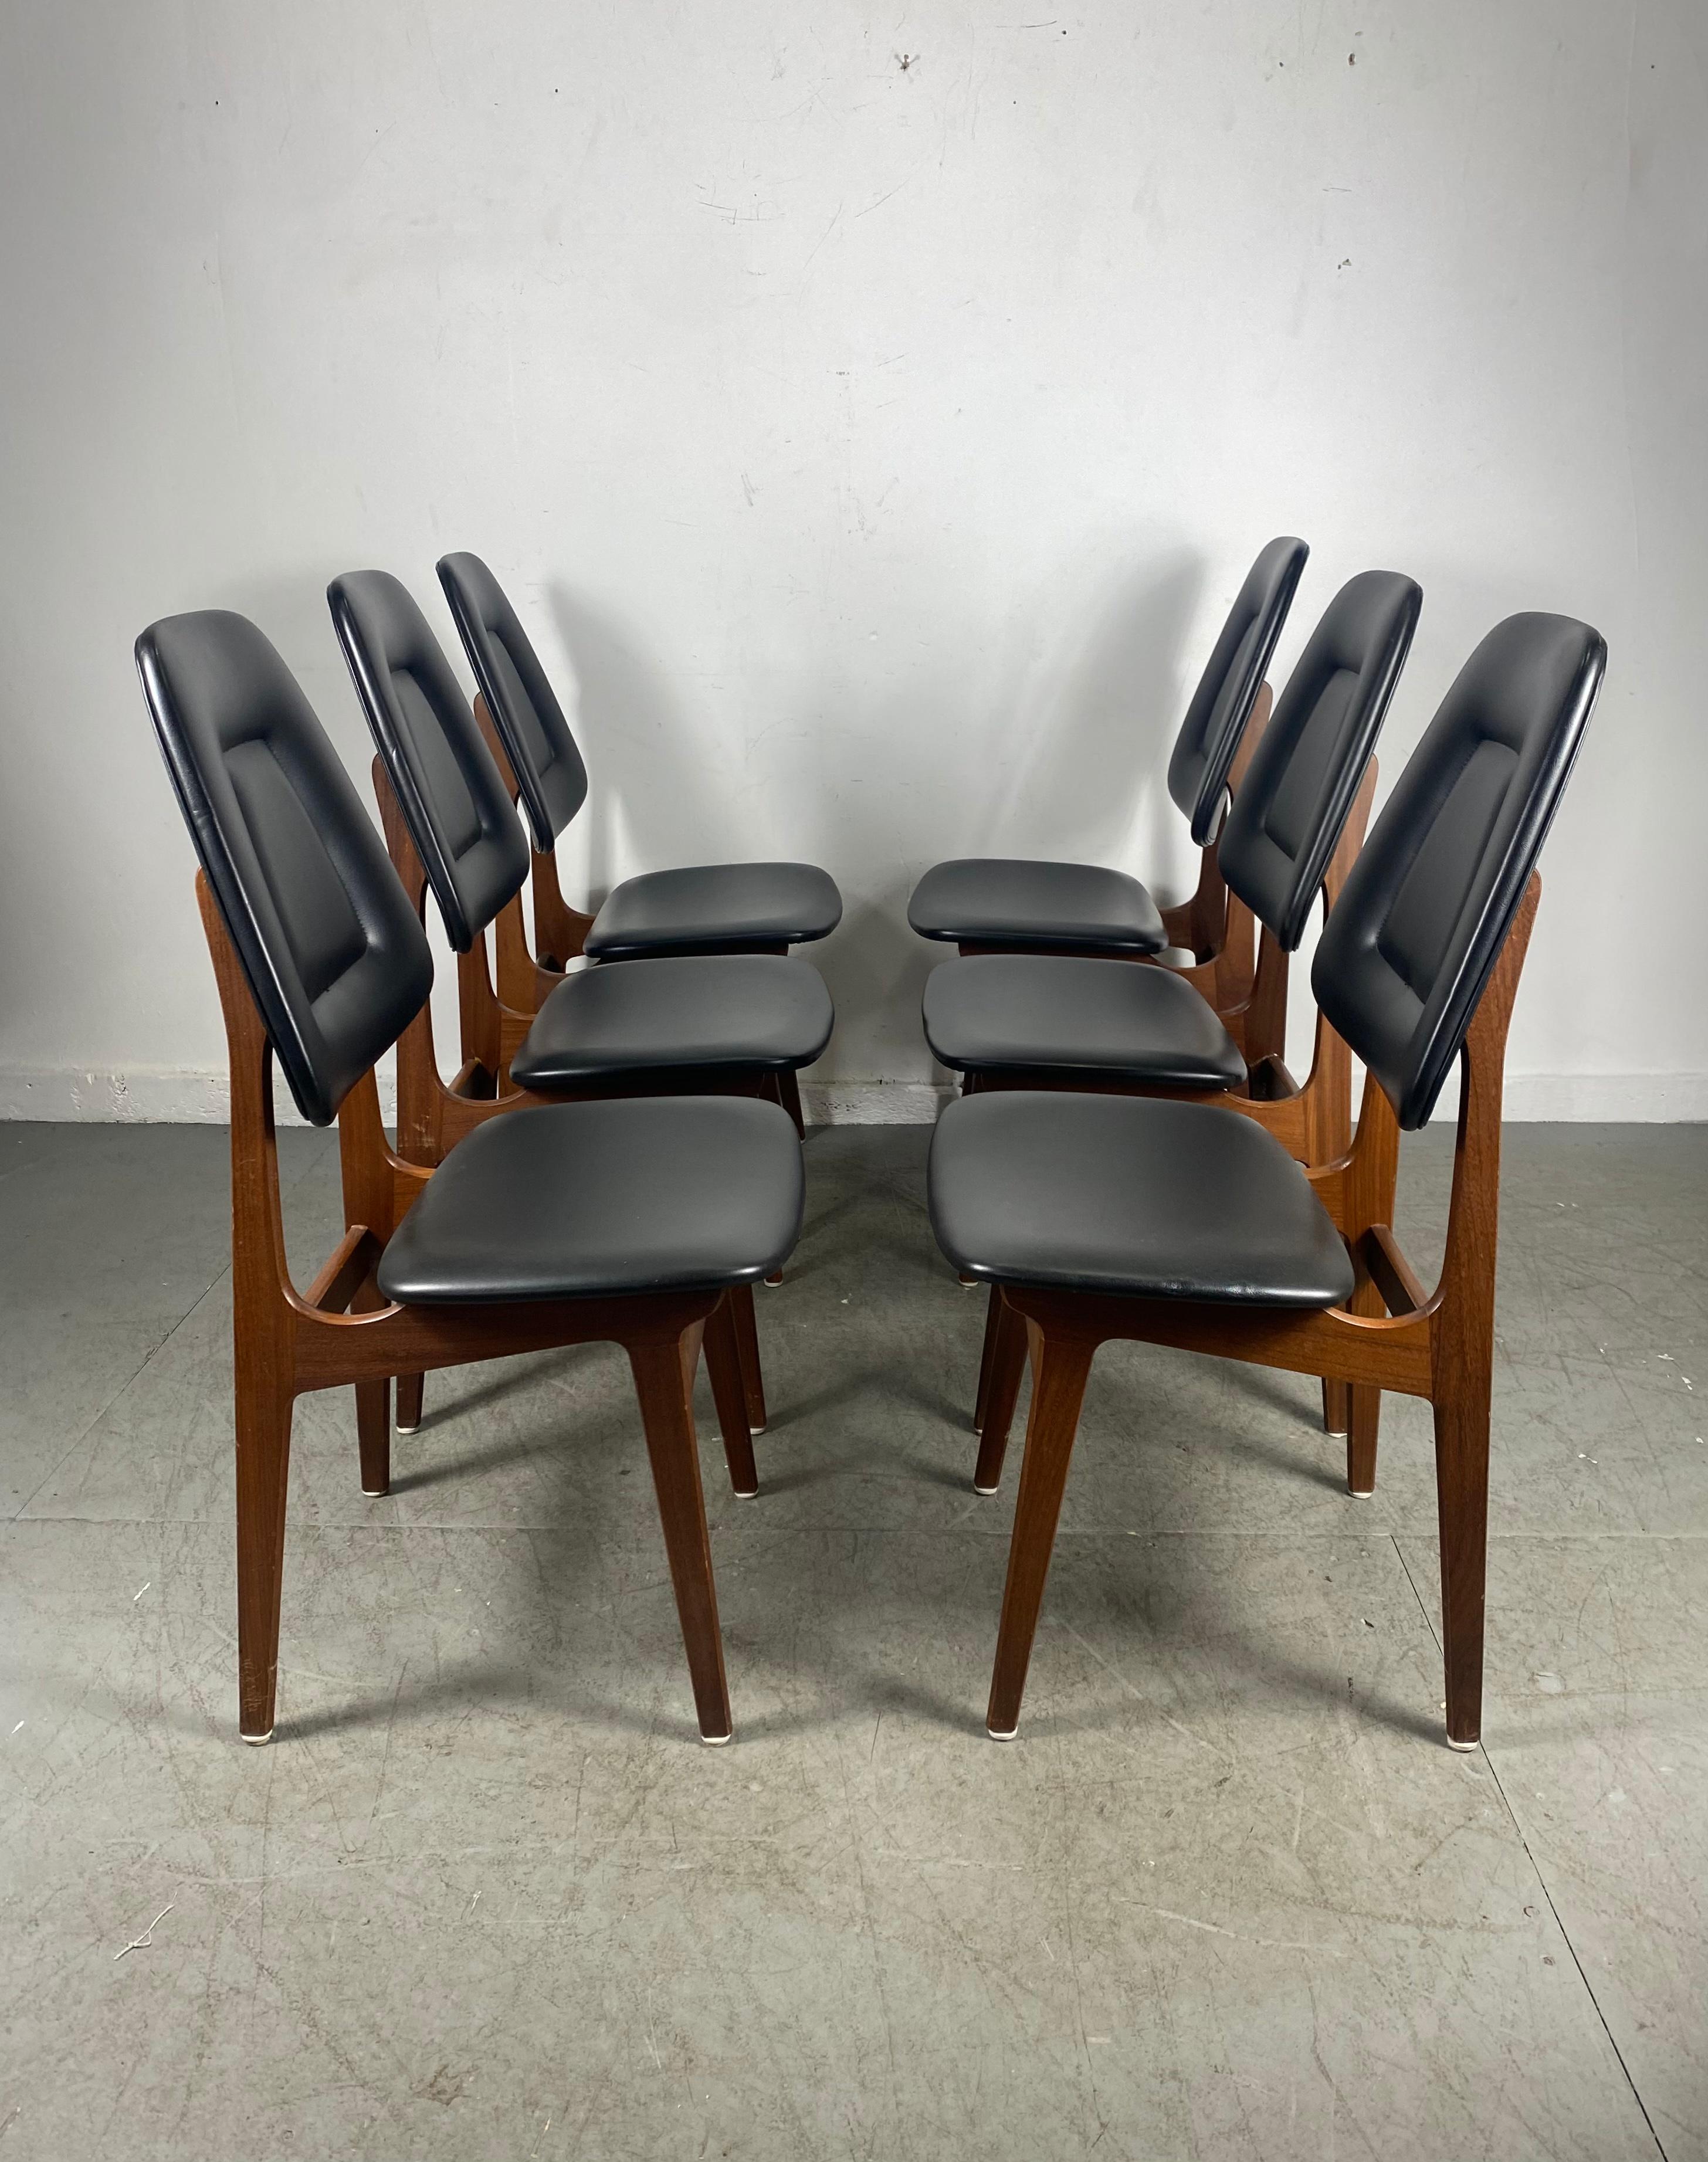 Ensemble de six chaises de salle à manger en teck avec revêtement original en simili-cuir noir par Brødrene Sørheim. Les chaises sont en très bon état vintage avec des signes d'utilisation correspondant à l'âge. Structure solide, joints serrés, pas